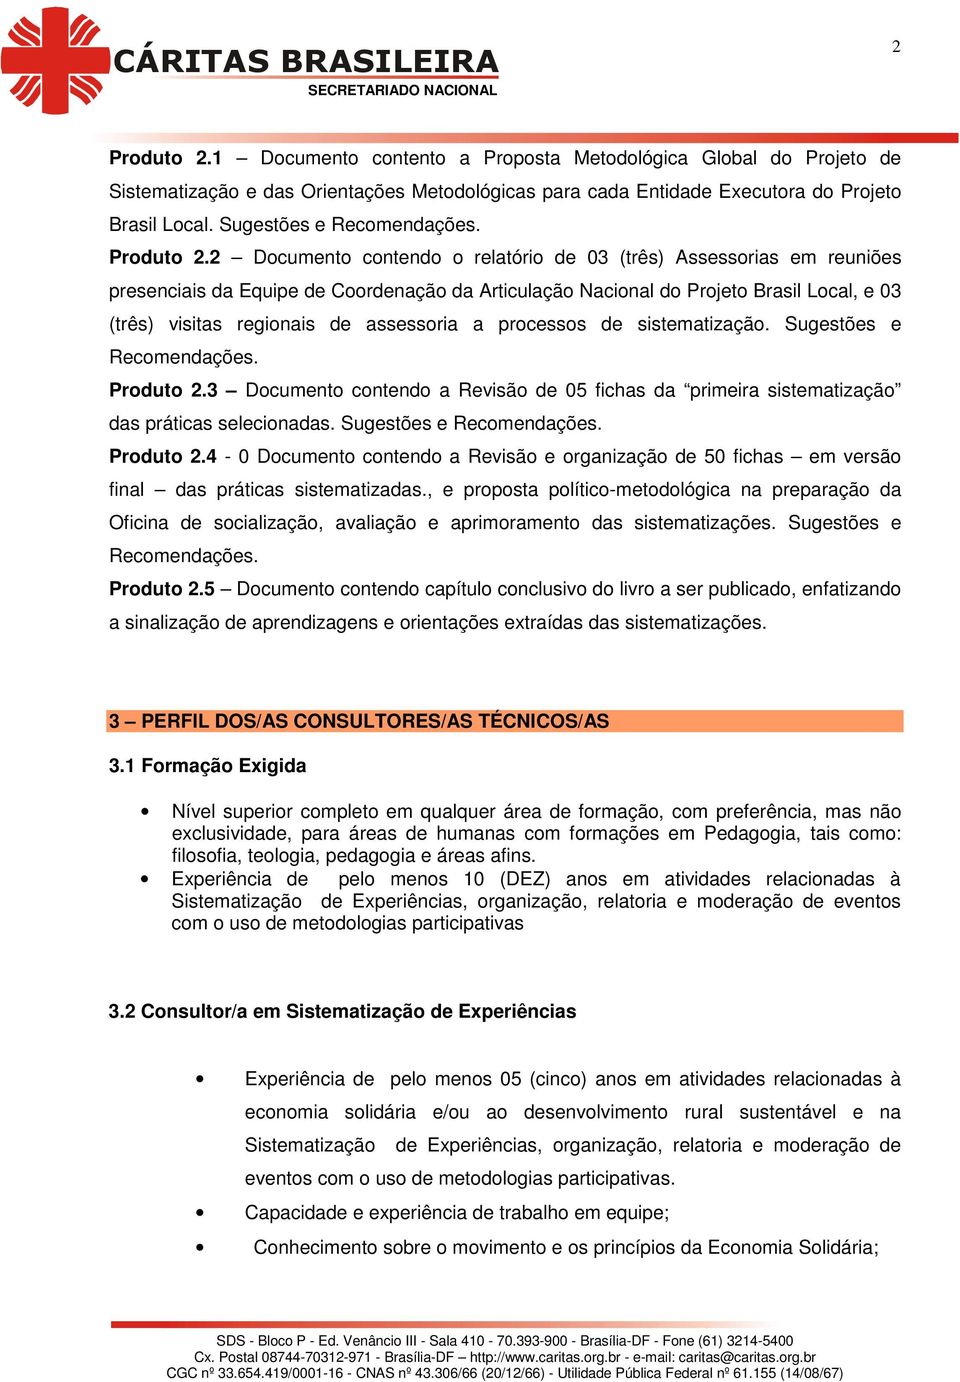 2 Documento contendo o relatório de 03 (três) Assessorias em reuniões presenciais da Equipe de Coordenação da Articulação Nacional do Projeto Brasil Local, e 03 (três) visitas regionais de assessoria